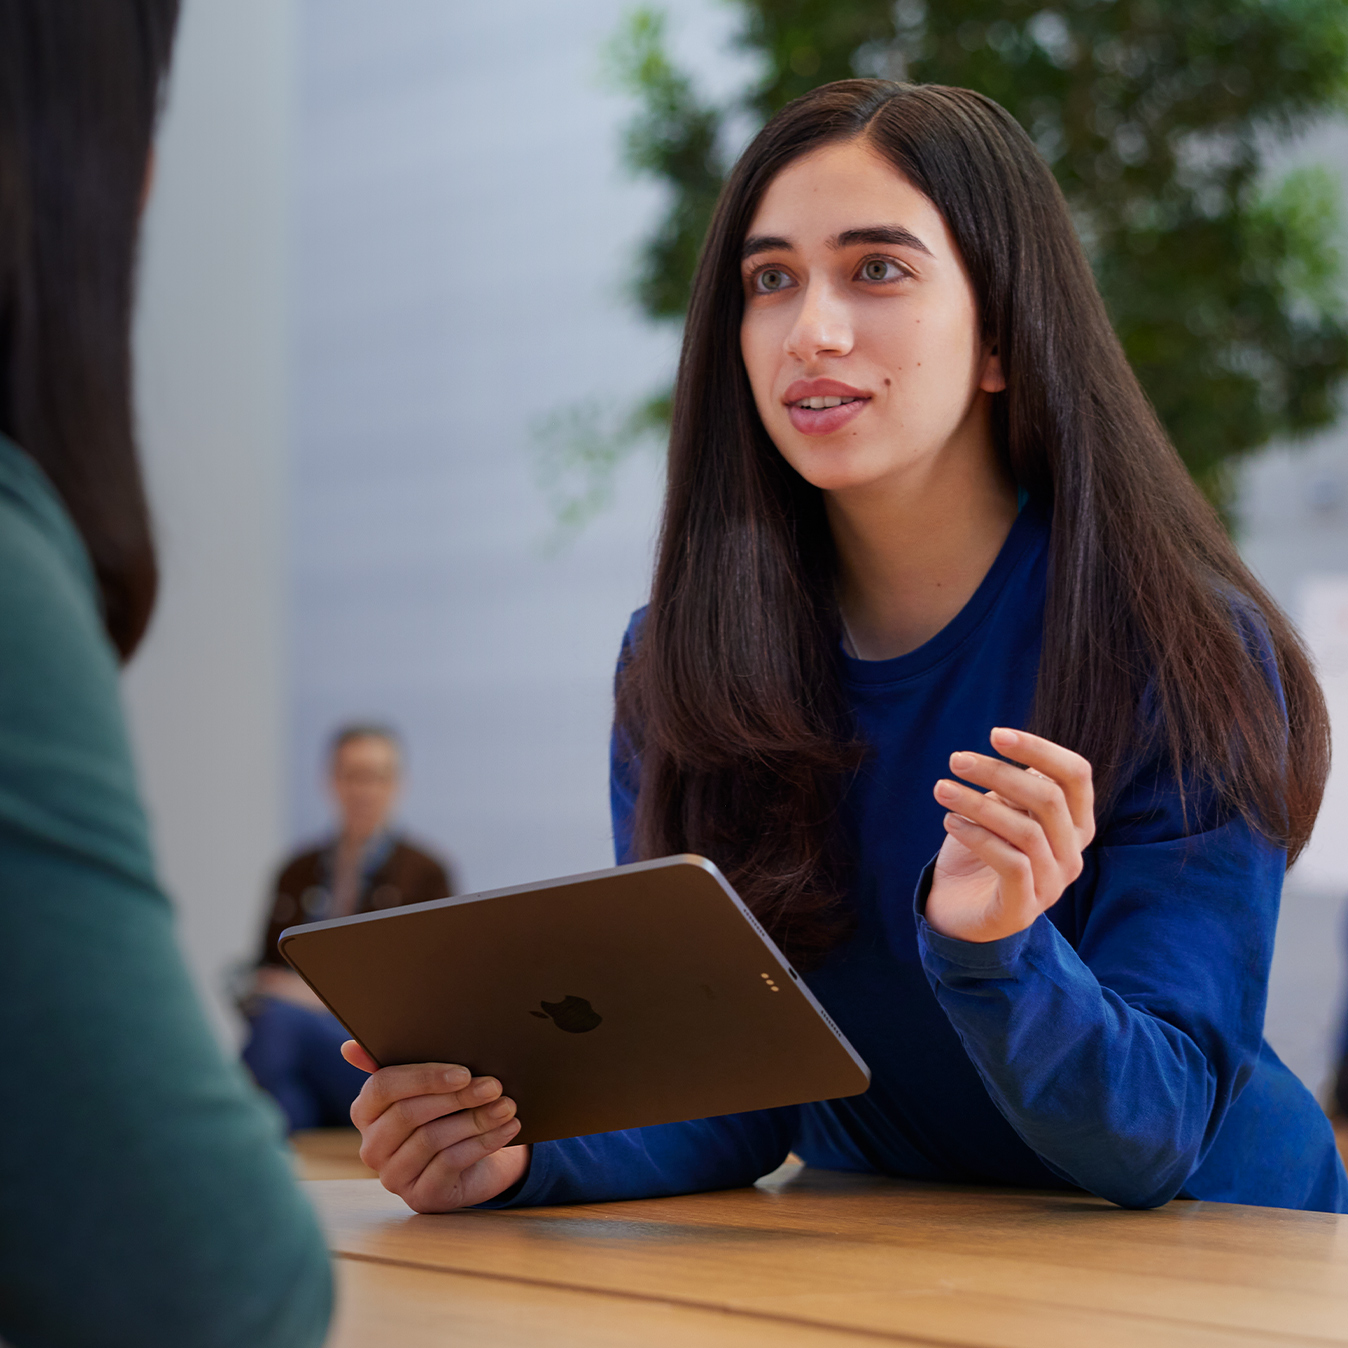 Serene staat met een iPad in haar hand met een klant te praten.